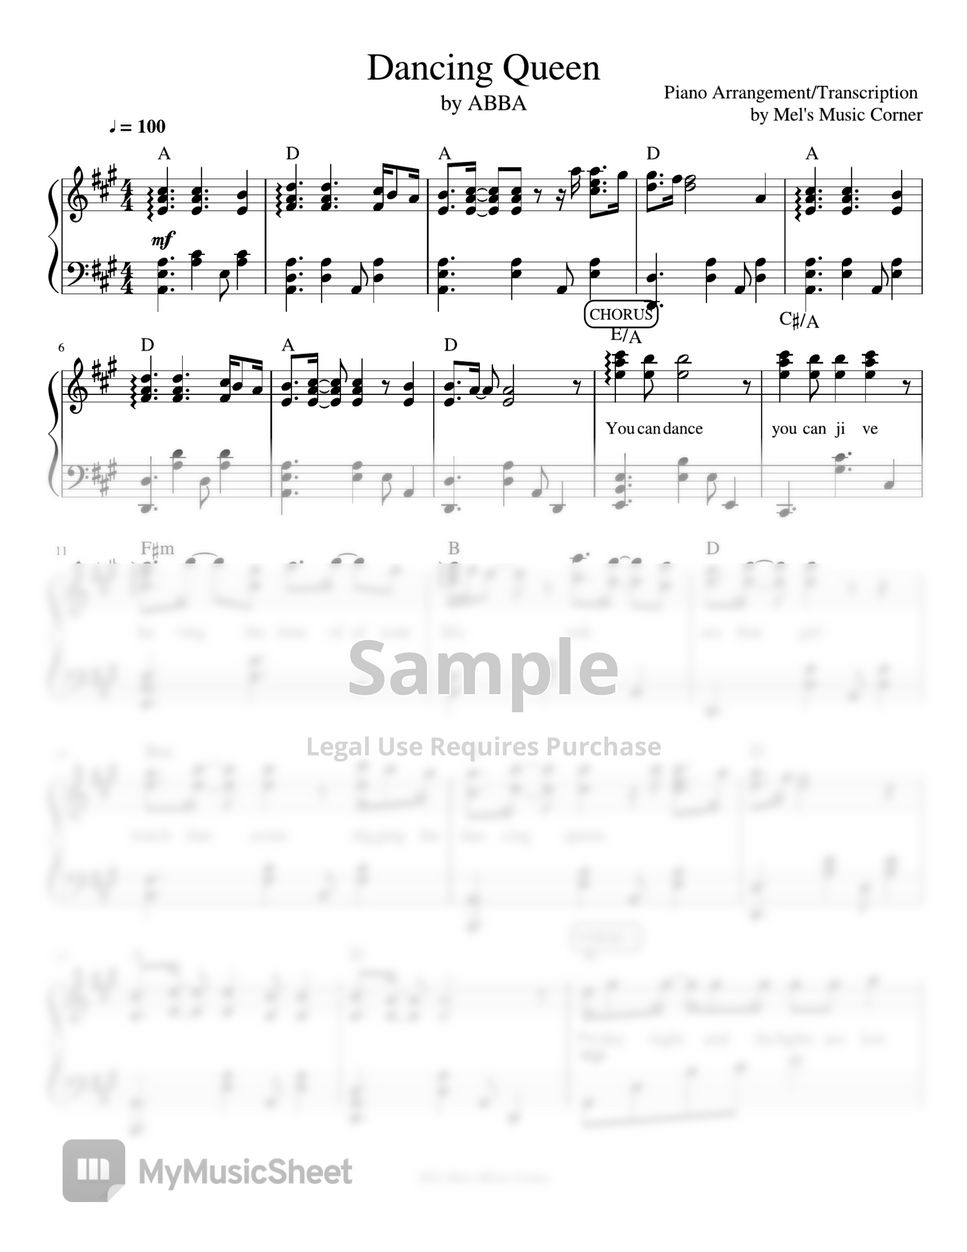 ABBA - Dancing Queen (piano sheet music) by Mel's Music Corner